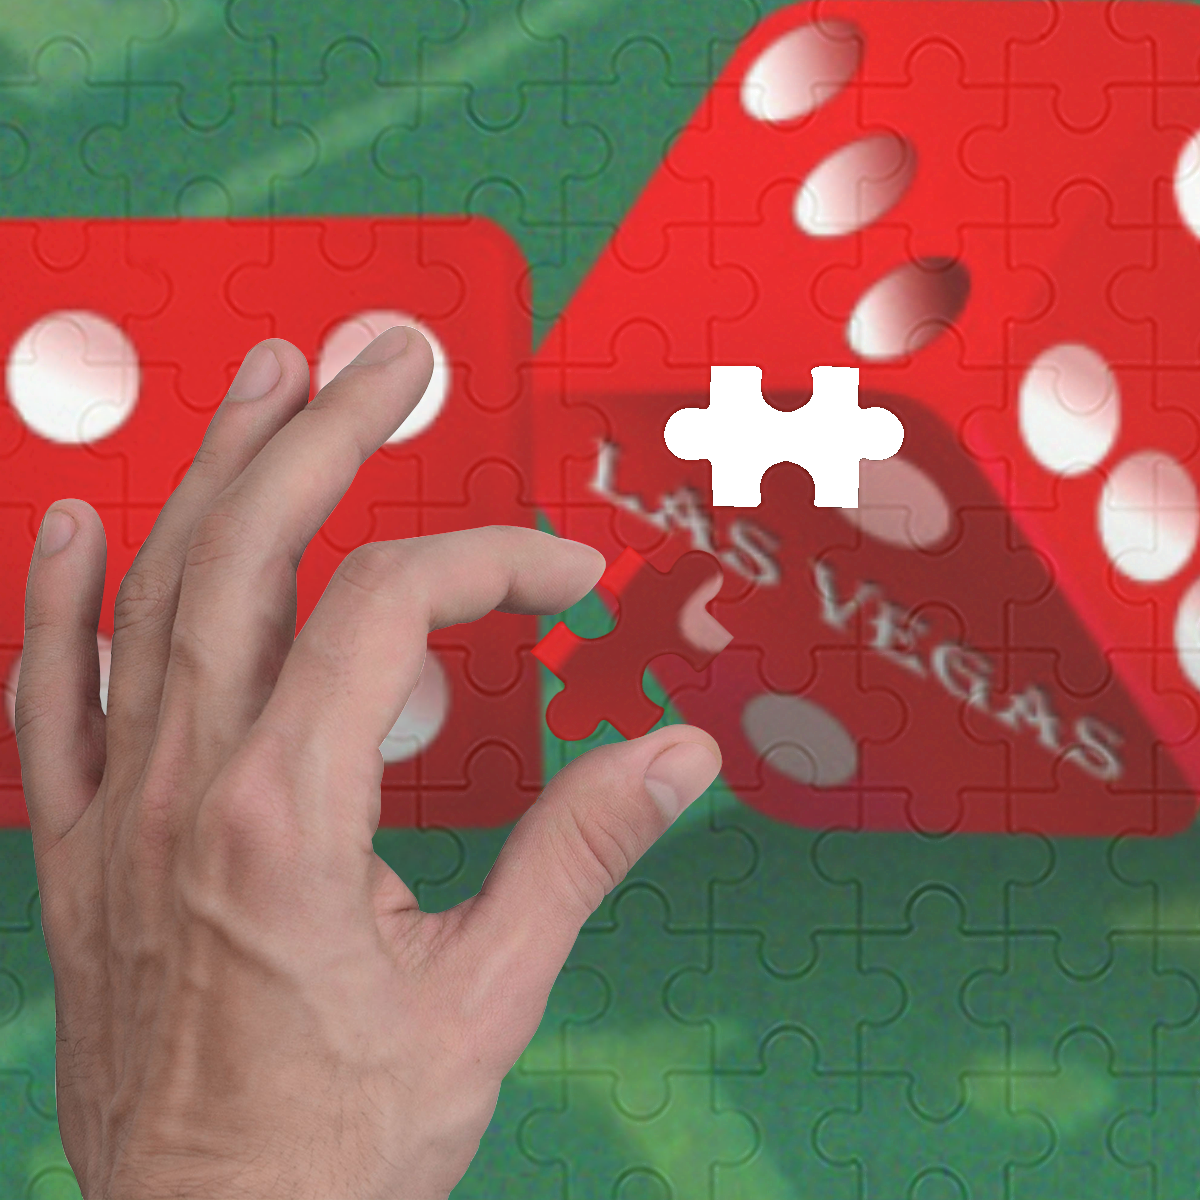 Las Vegas Dice on Craps Table 500-Piece Wooden Photo Puzzles